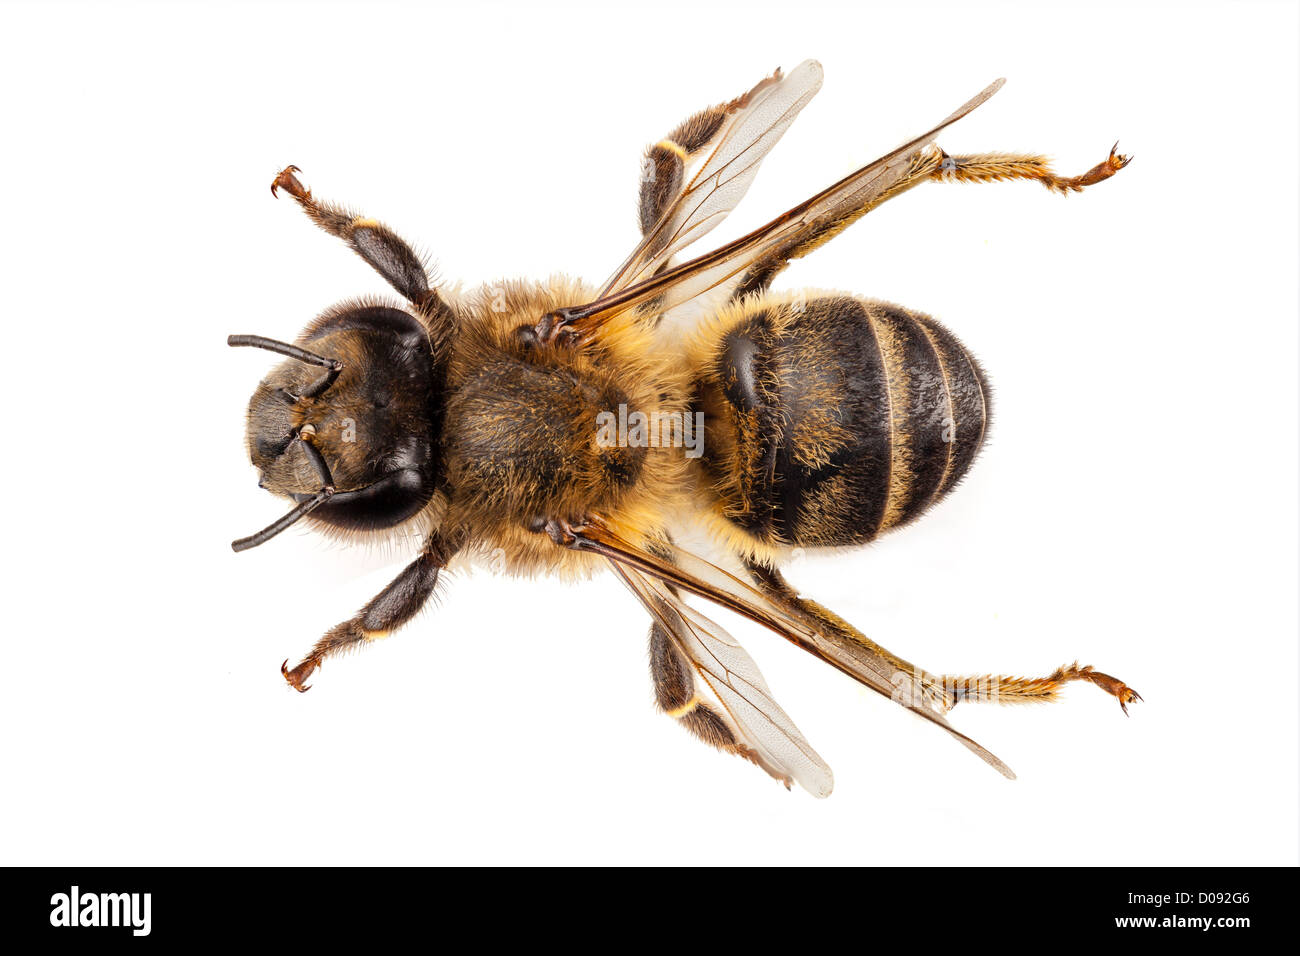 Especies de abejas Apis mellifera Foto de stock